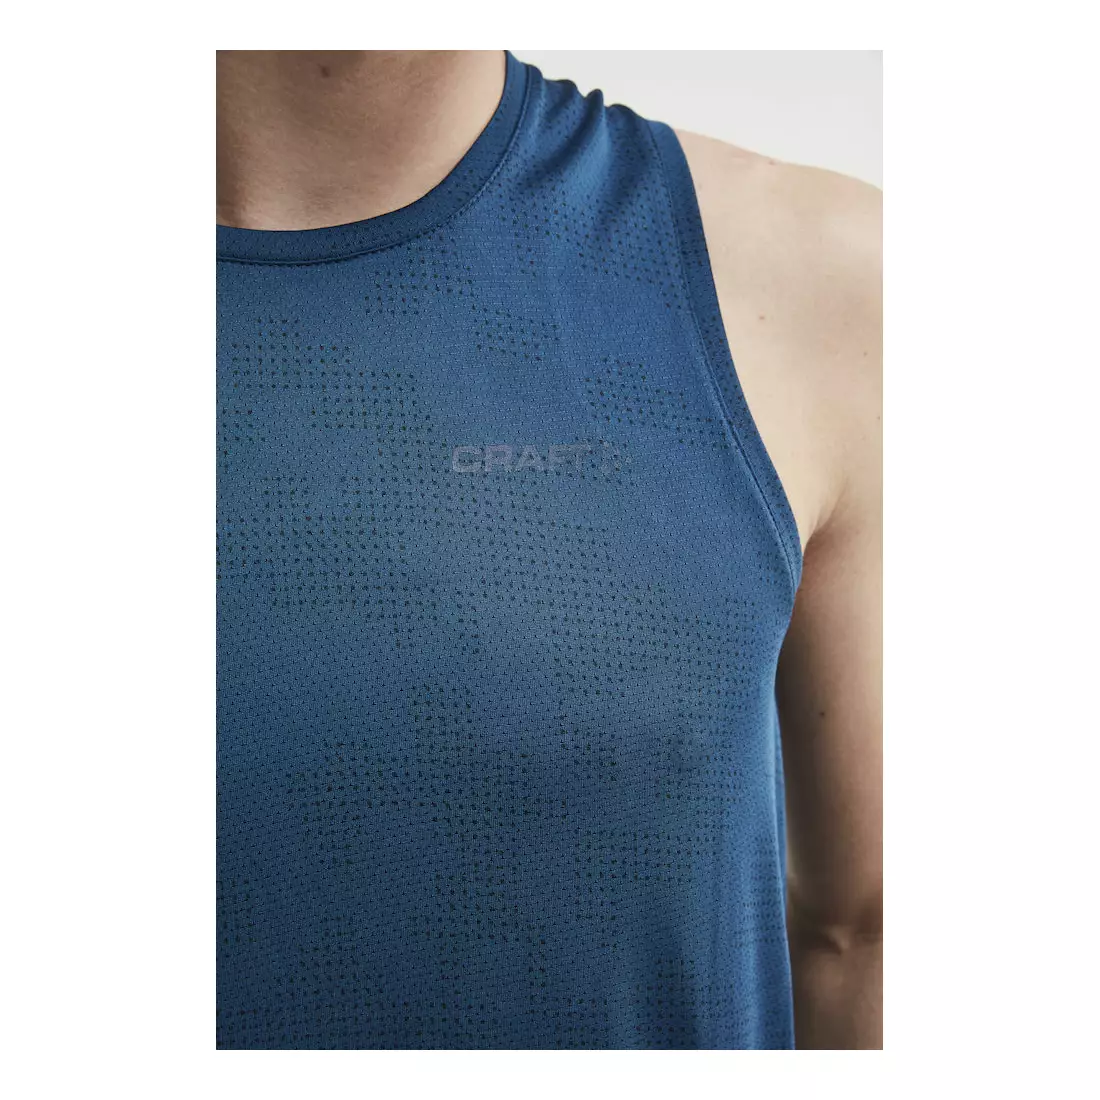 CRAFT EAZE męska koszulka do biegania / sportowa bez rękawów niebieska 1907051-138373